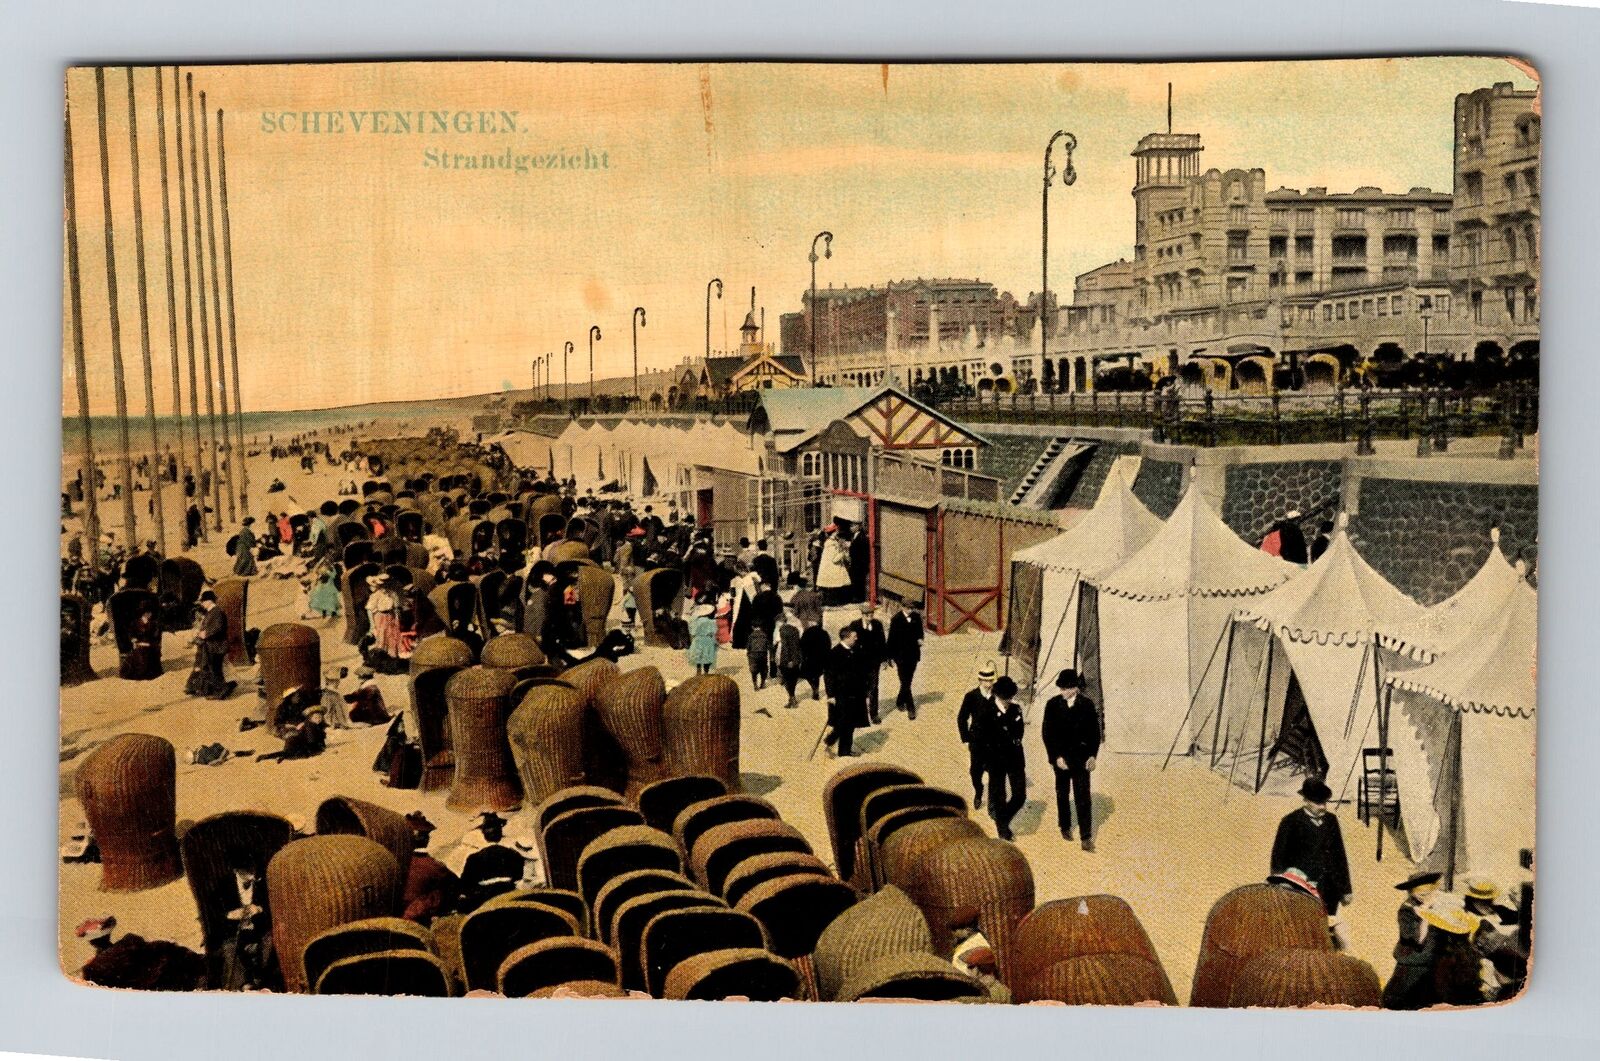 Scheveningen-Netherlands, Modern Seaside Resort, Vintage Postcard